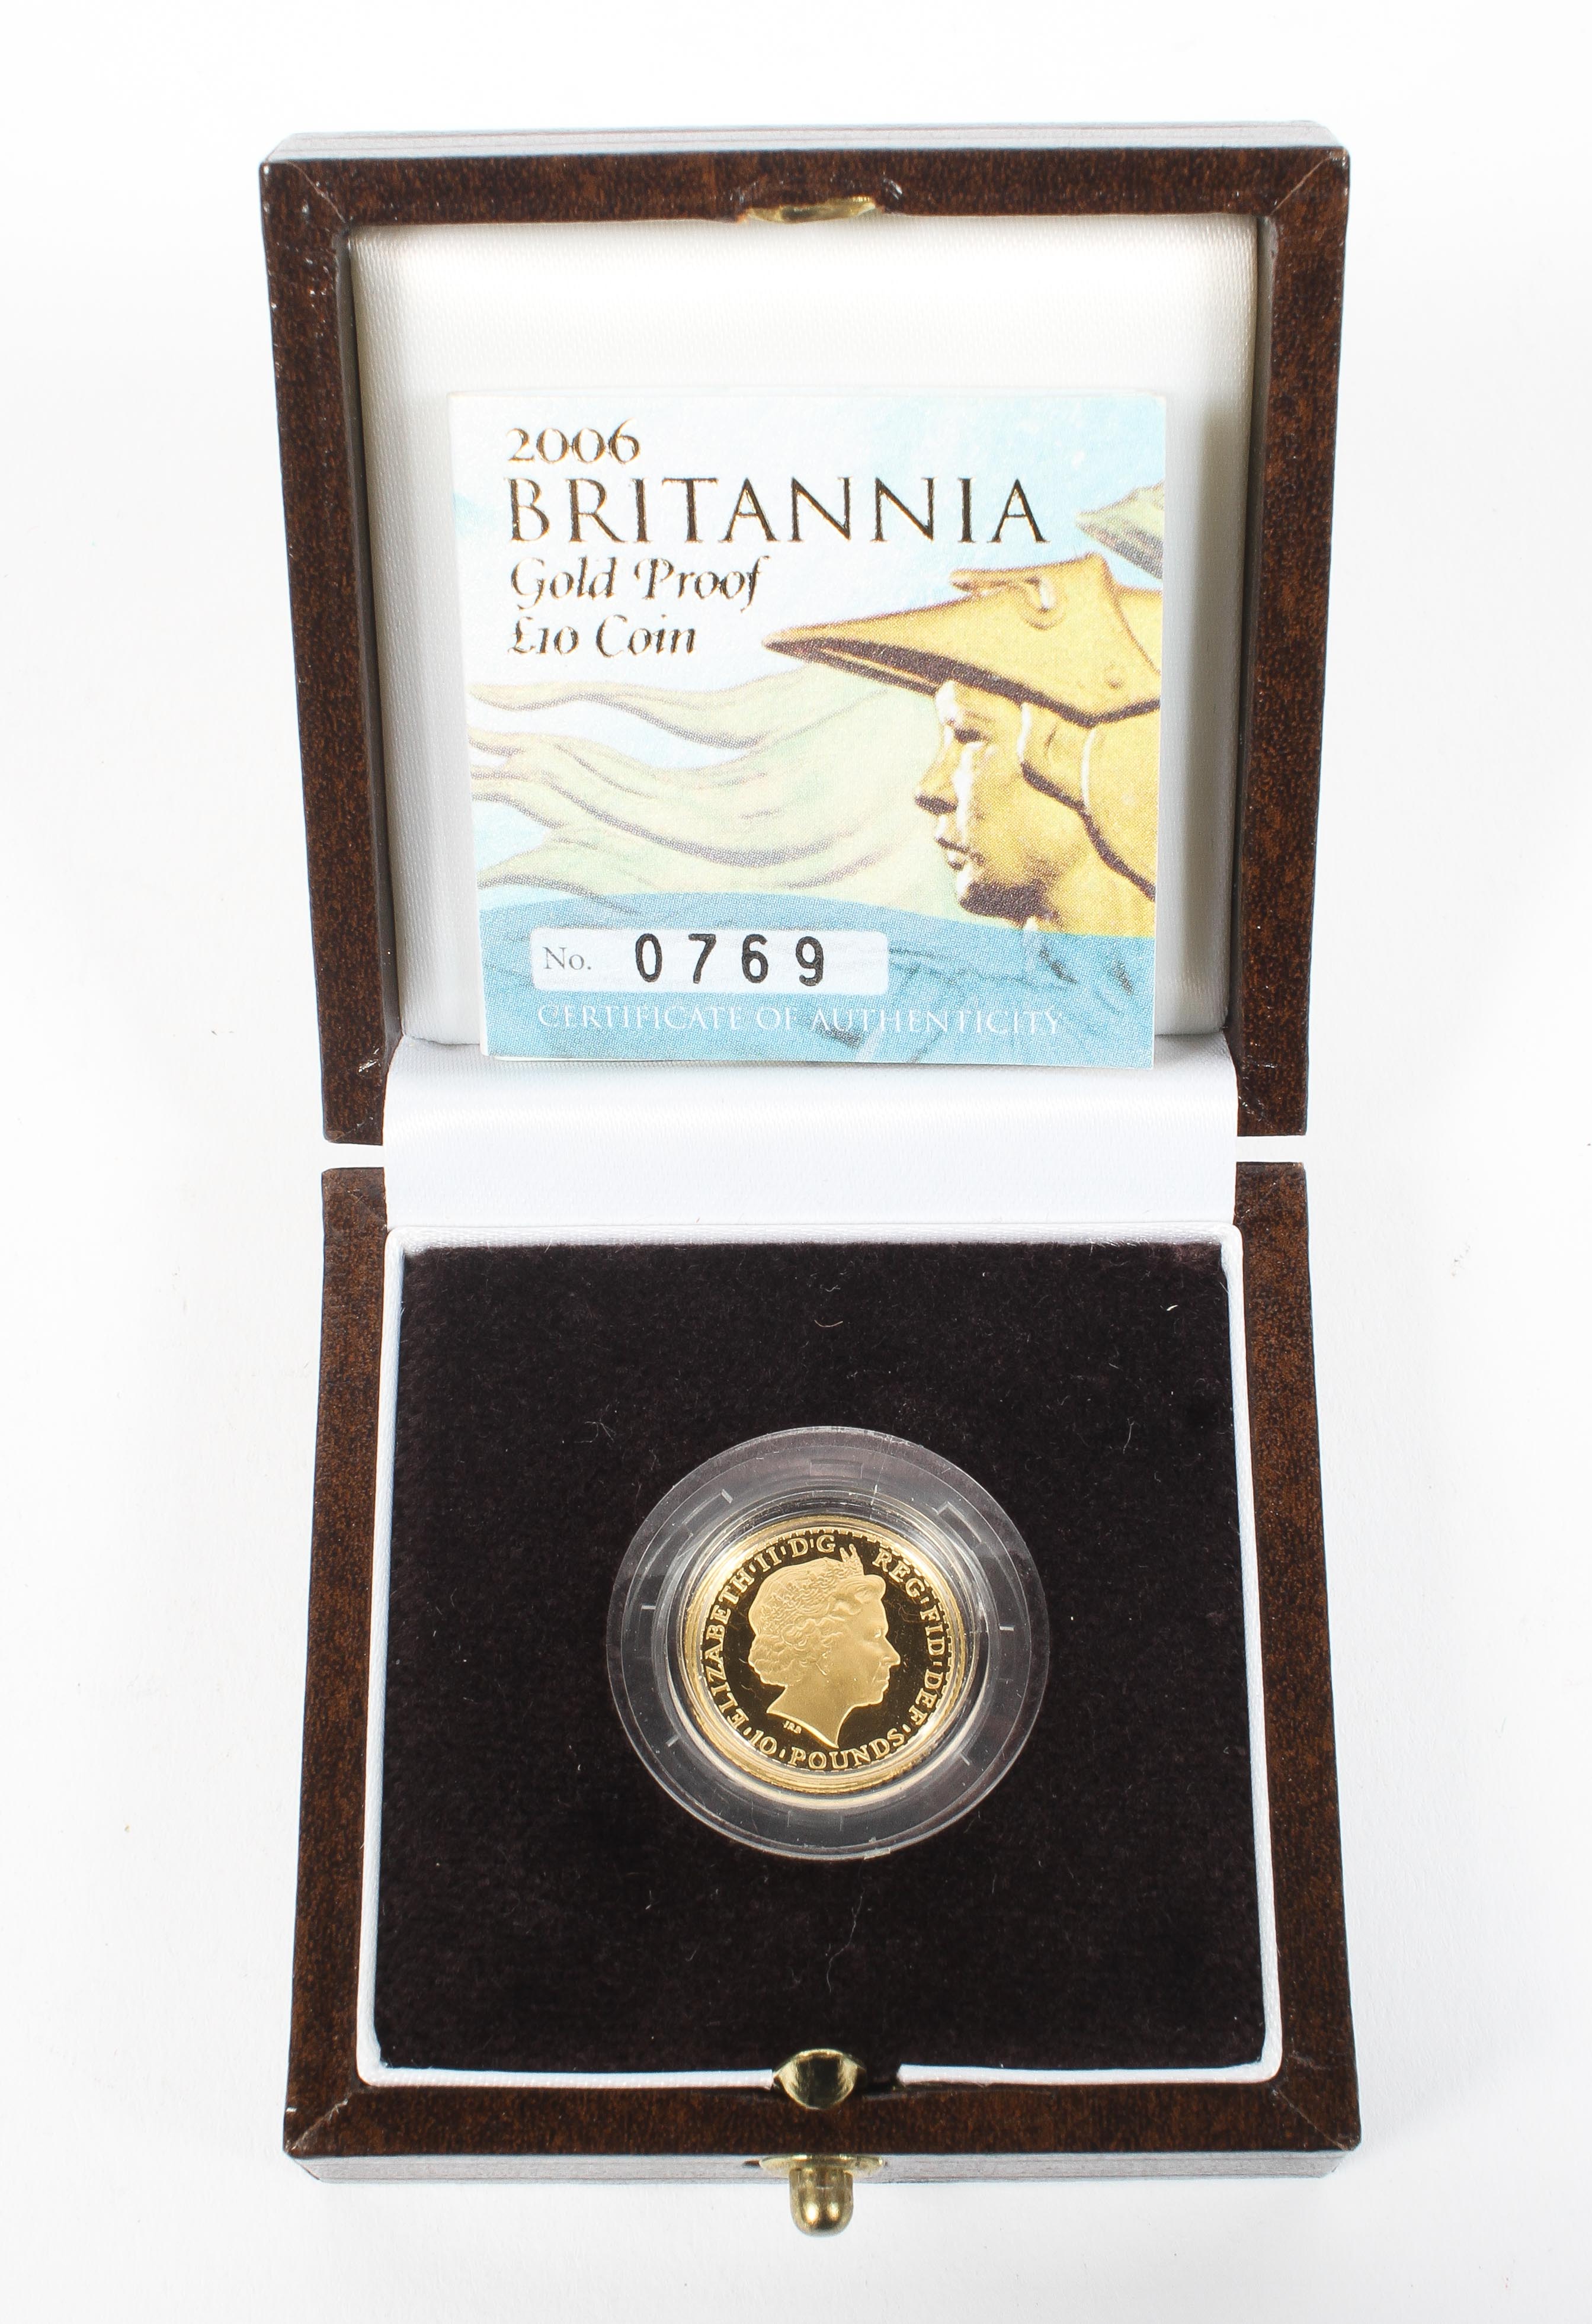 A 2006 Britannia Gold proof £10 coin.